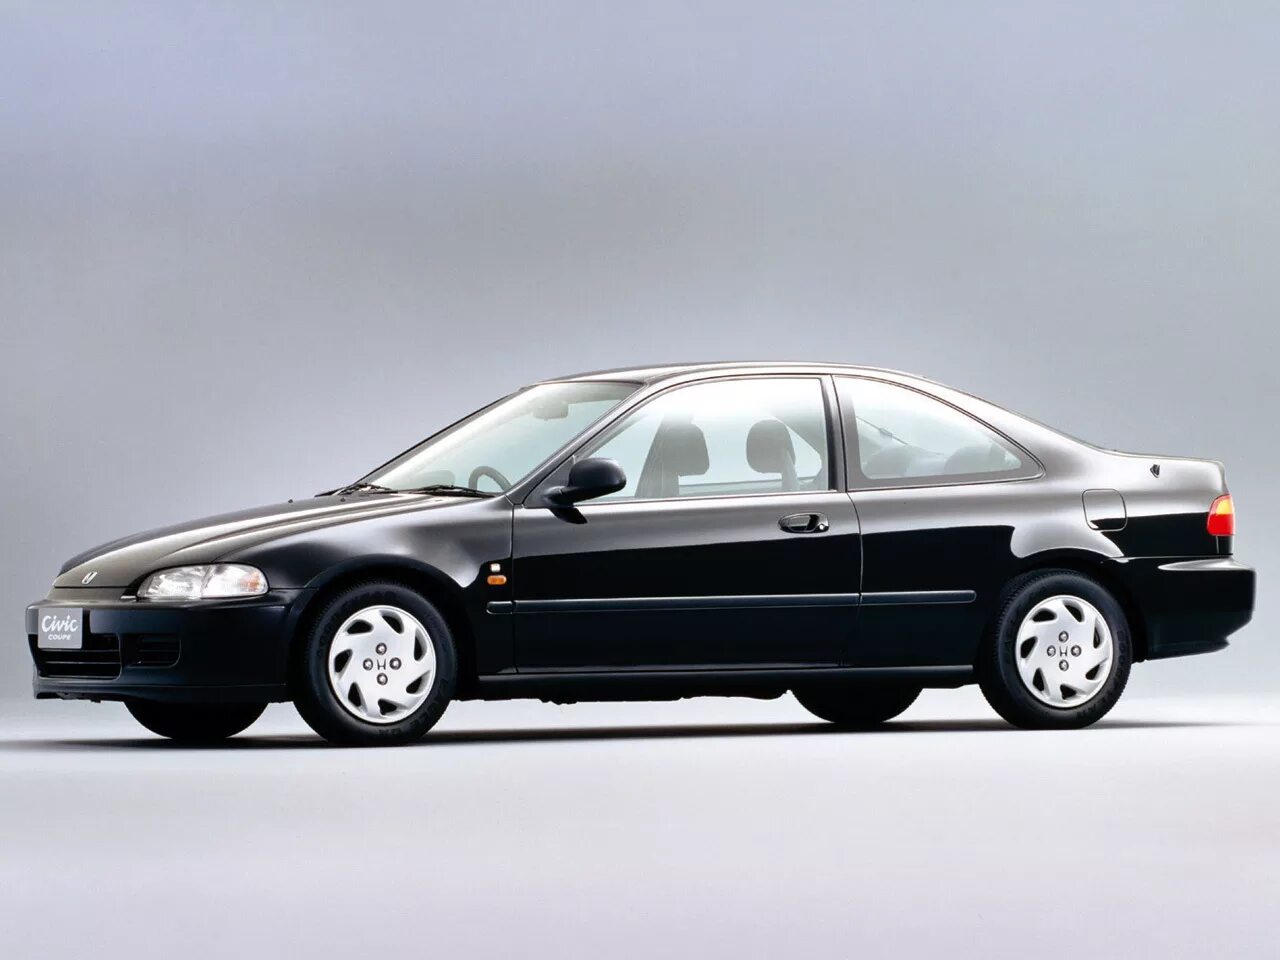 Honda Civic Coupe ej1 1993. Honda Civic Coupe 1993. Honda Civic 5 поколение купе. Хонда Цивик 5 поколения. Цивик 5 поколение